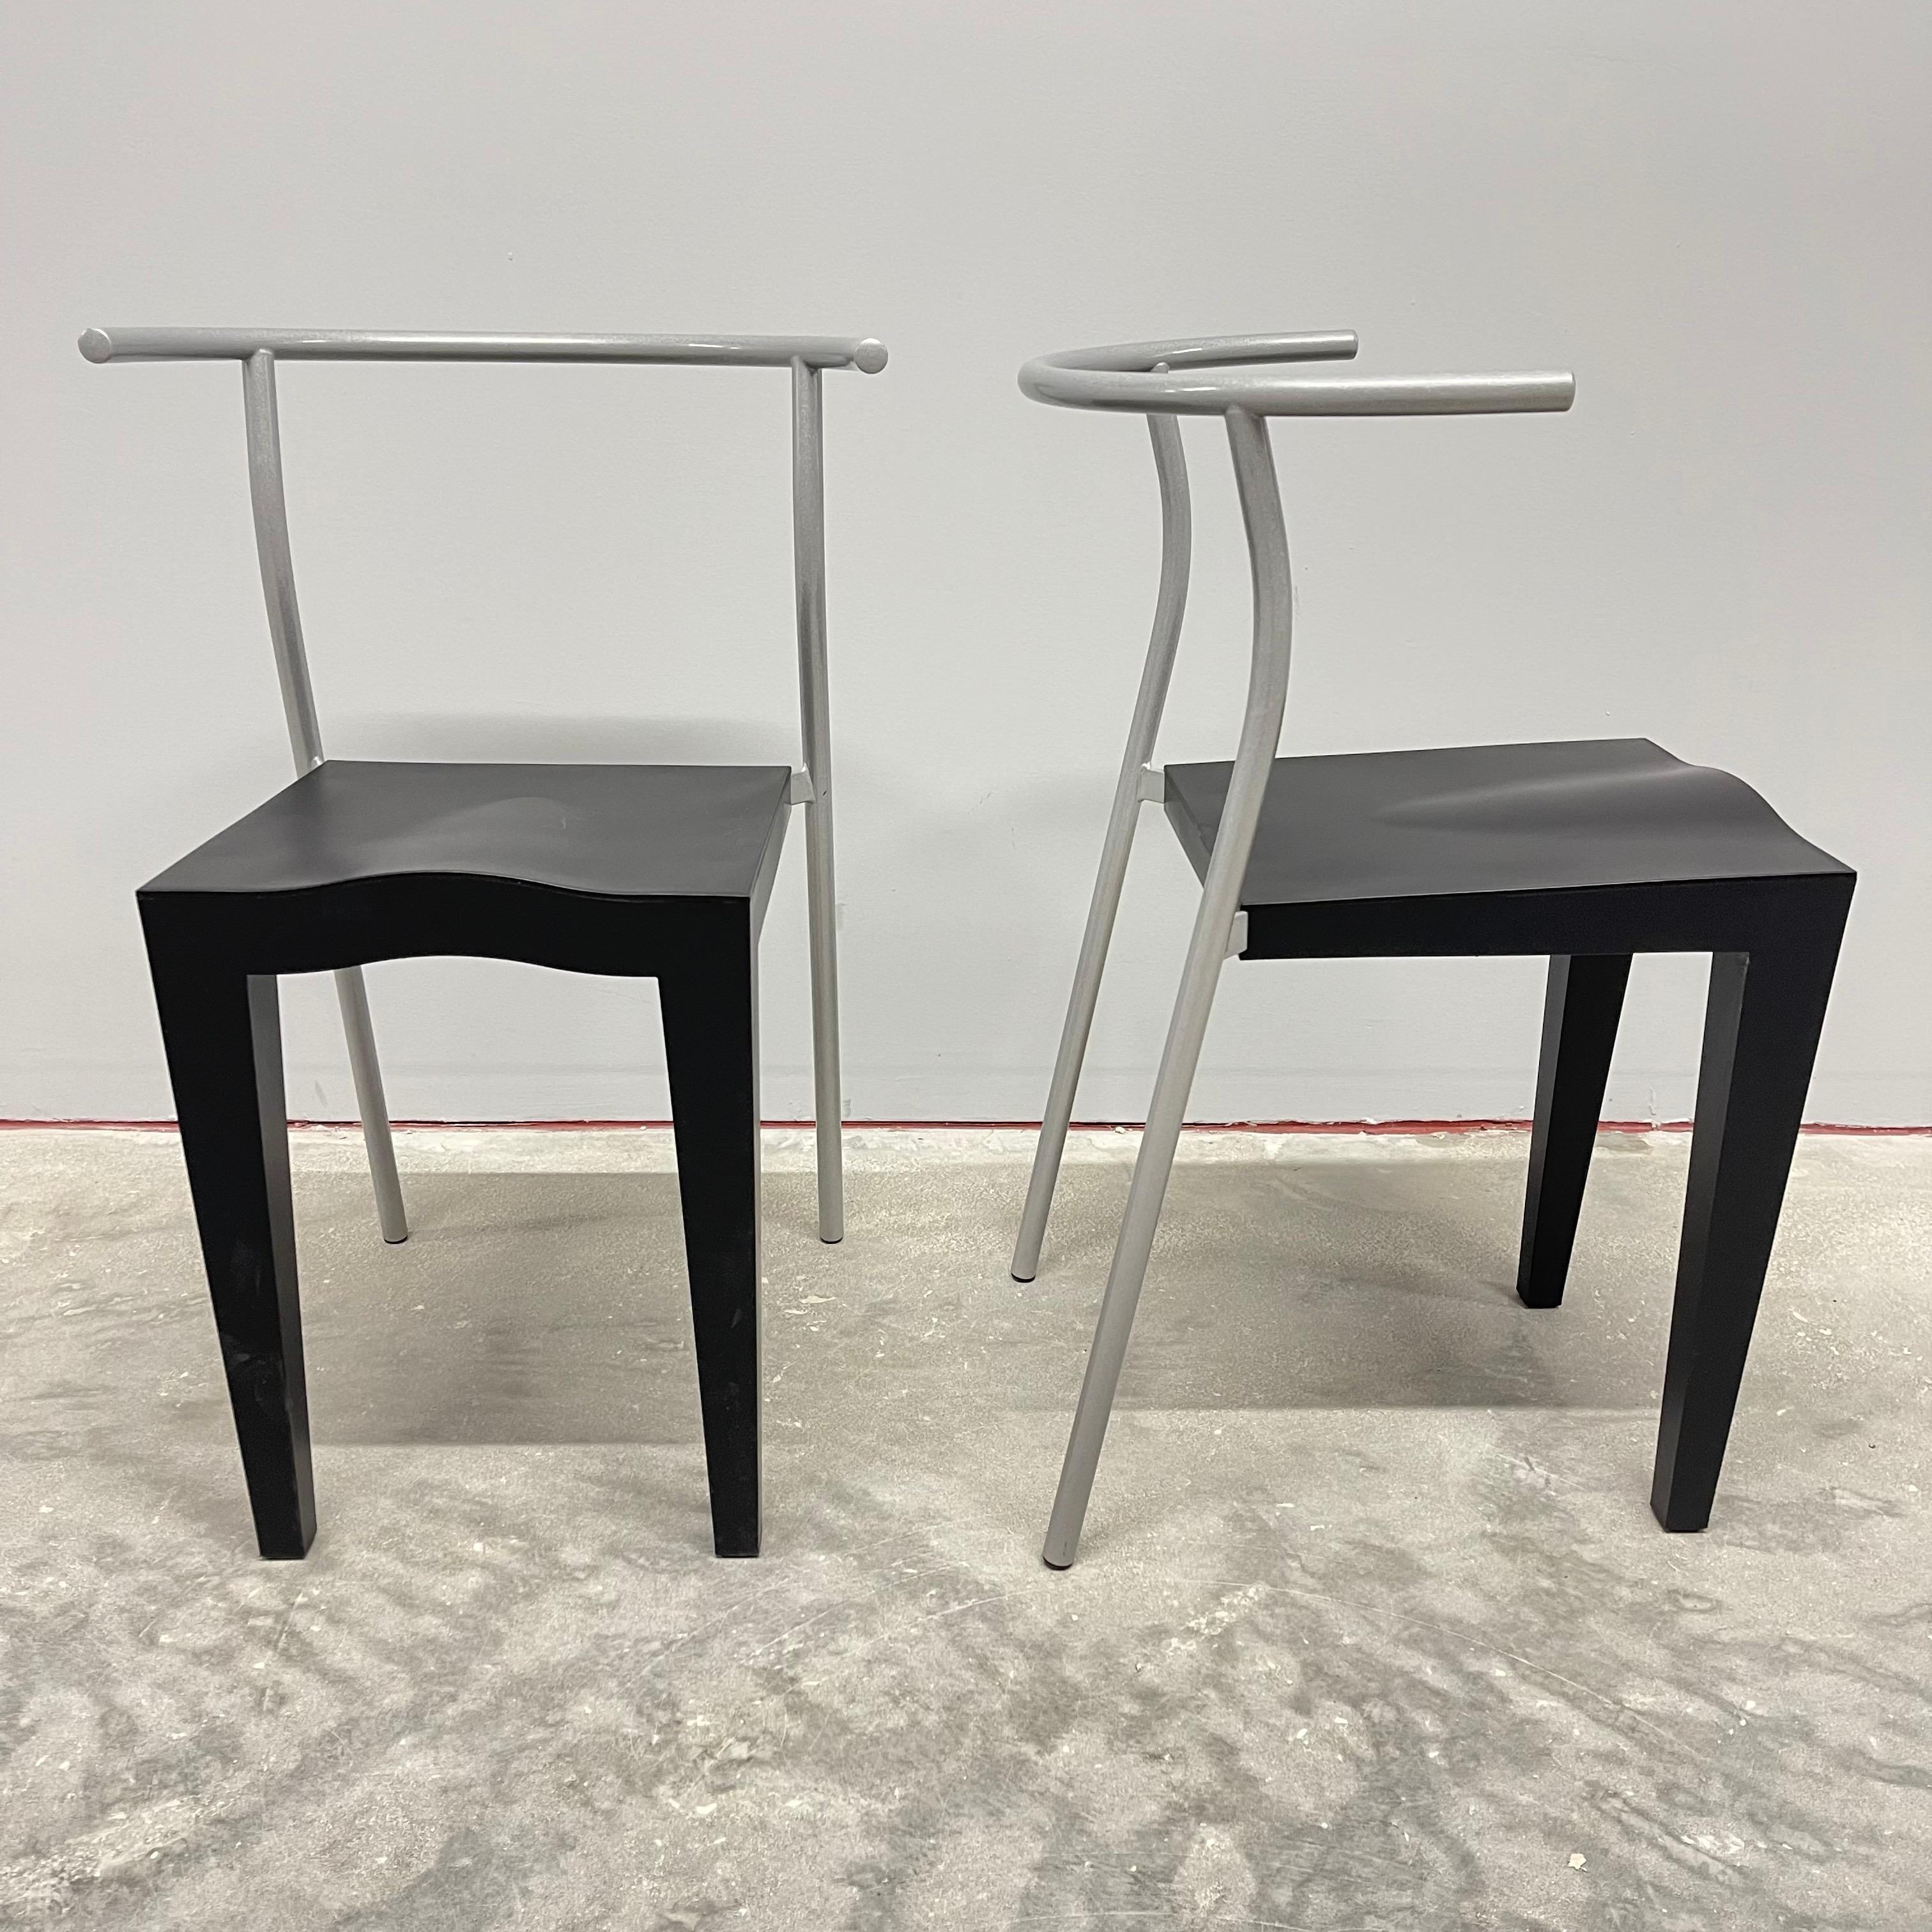 Paar postmoderne Stühle „Dr Glob“ von Philippe Starck für Kartell, Italien, 1990 (20. Jahrhundert) im Angebot